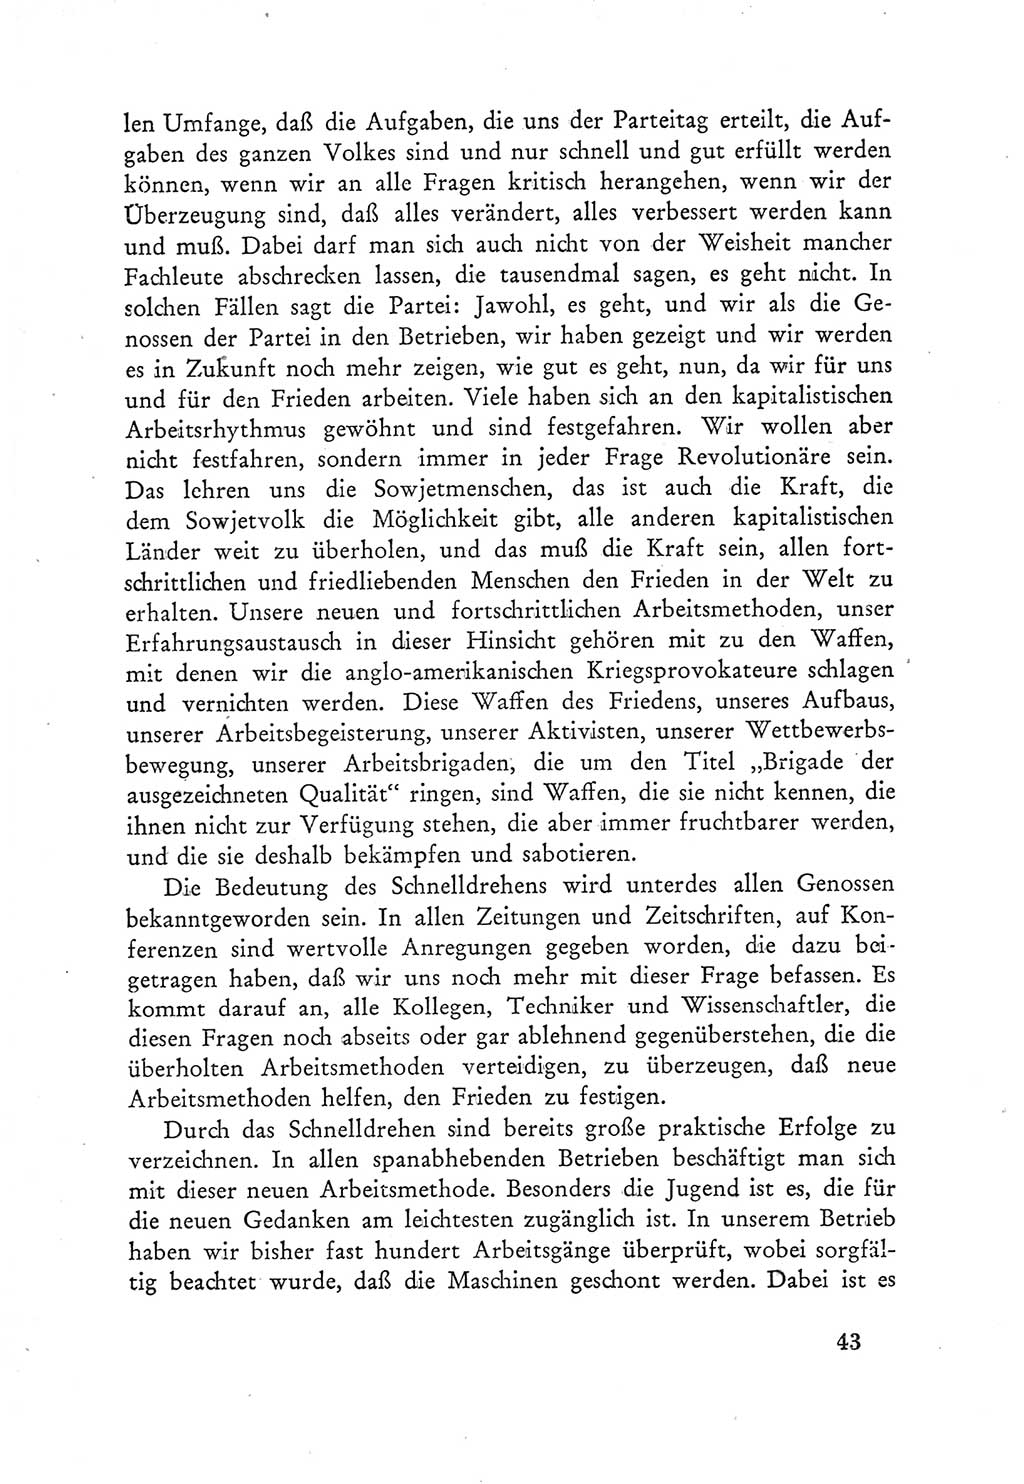 Protokoll der Verhandlungen des Ⅲ. Parteitages der Sozialistischen Einheitspartei Deutschlands (SED) [Deutsche Demokratische Republik (DDR)] 1950, Band 2, Seite 43 (Prot. Verh. Ⅲ. PT SED DDR 1950, Bd. 2, S. 43)